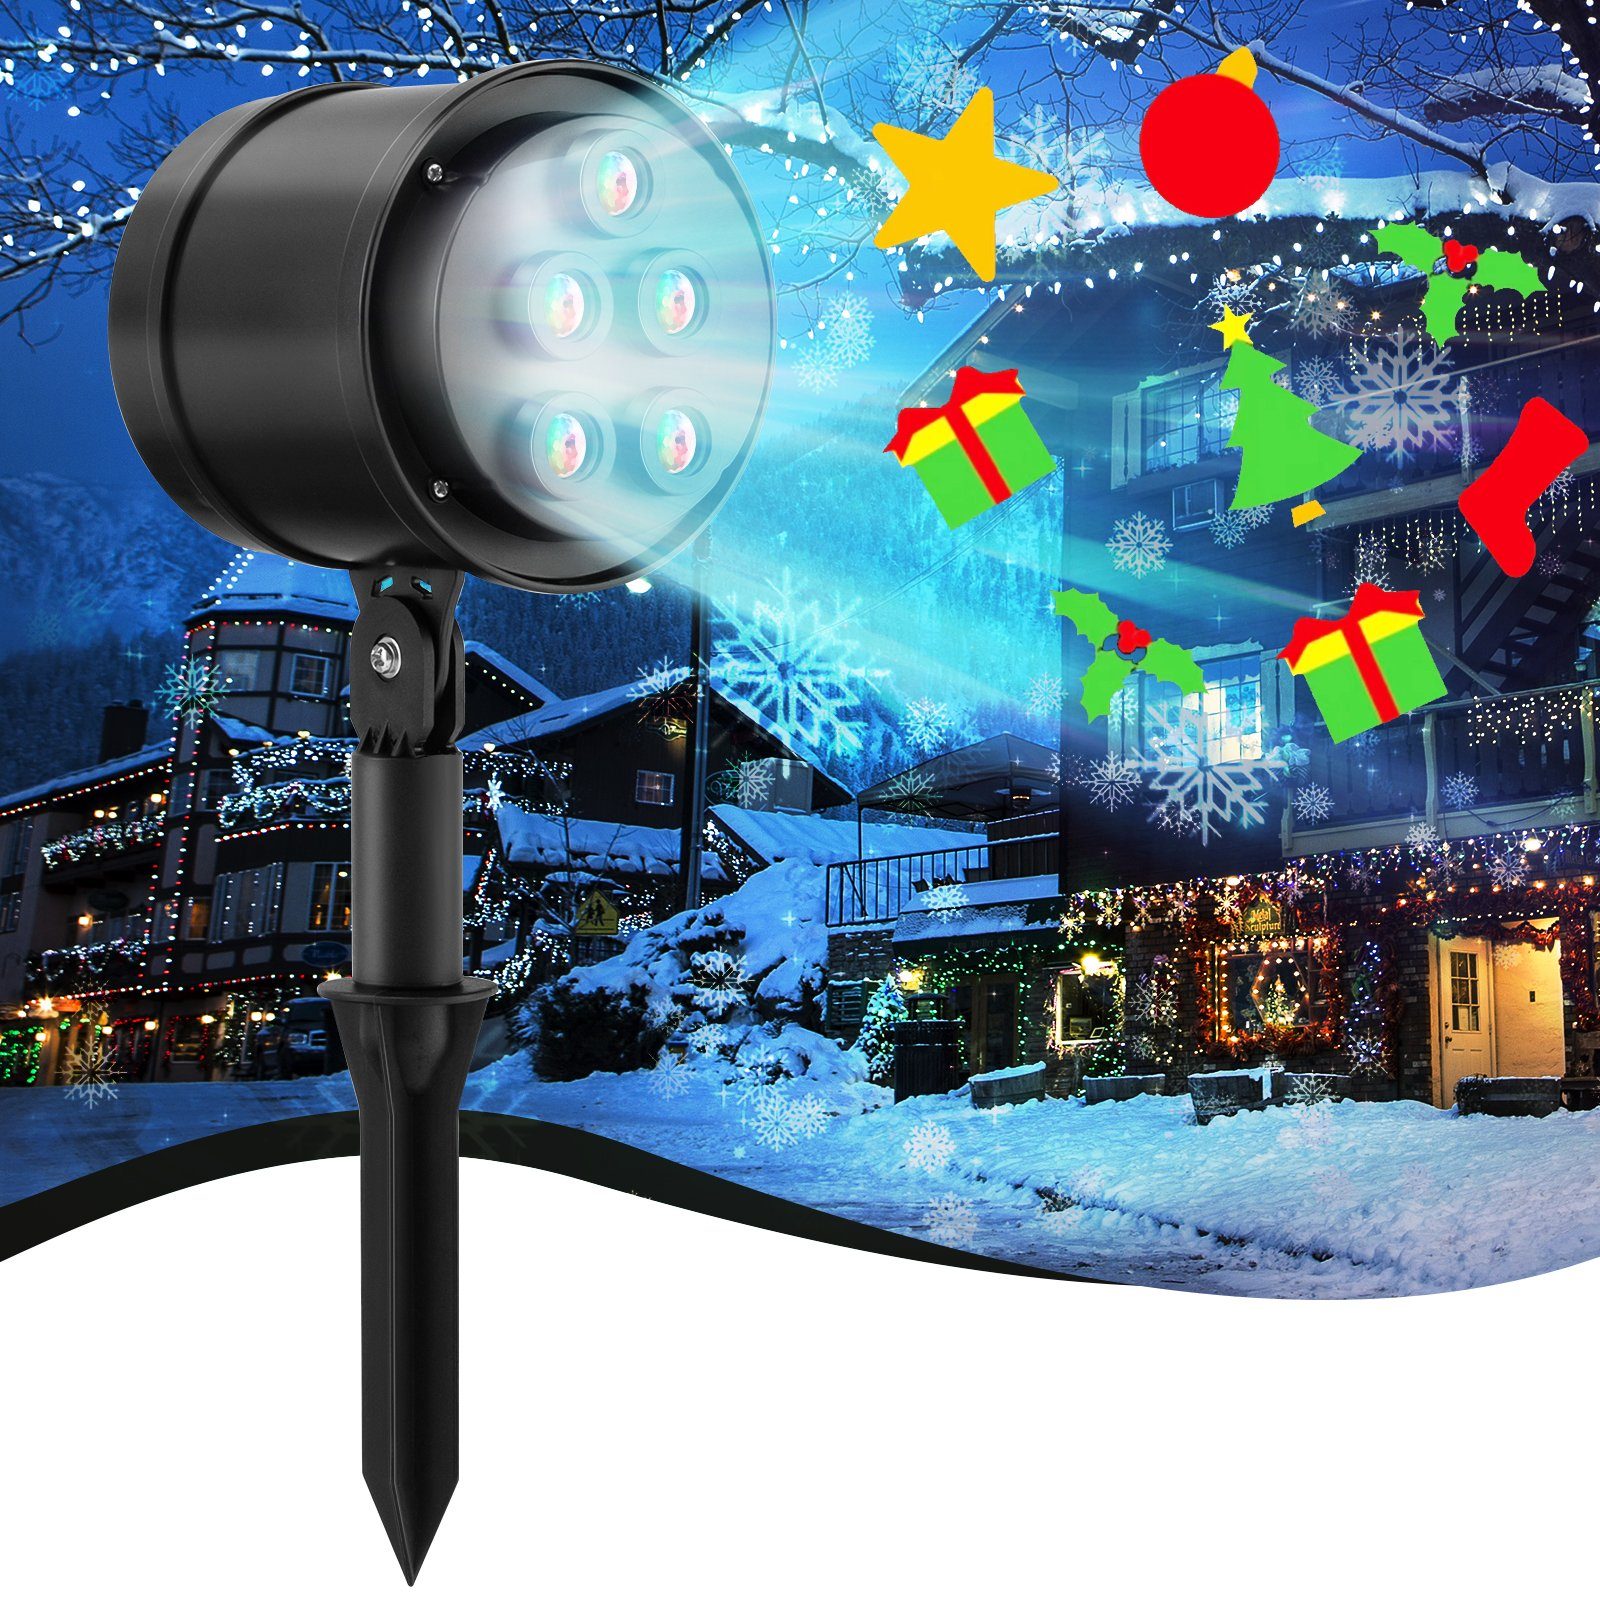 COSTWAY Projektionslampe, 5 für Kopf, Weihnachten, LED, drehbarer 11x12x46cm